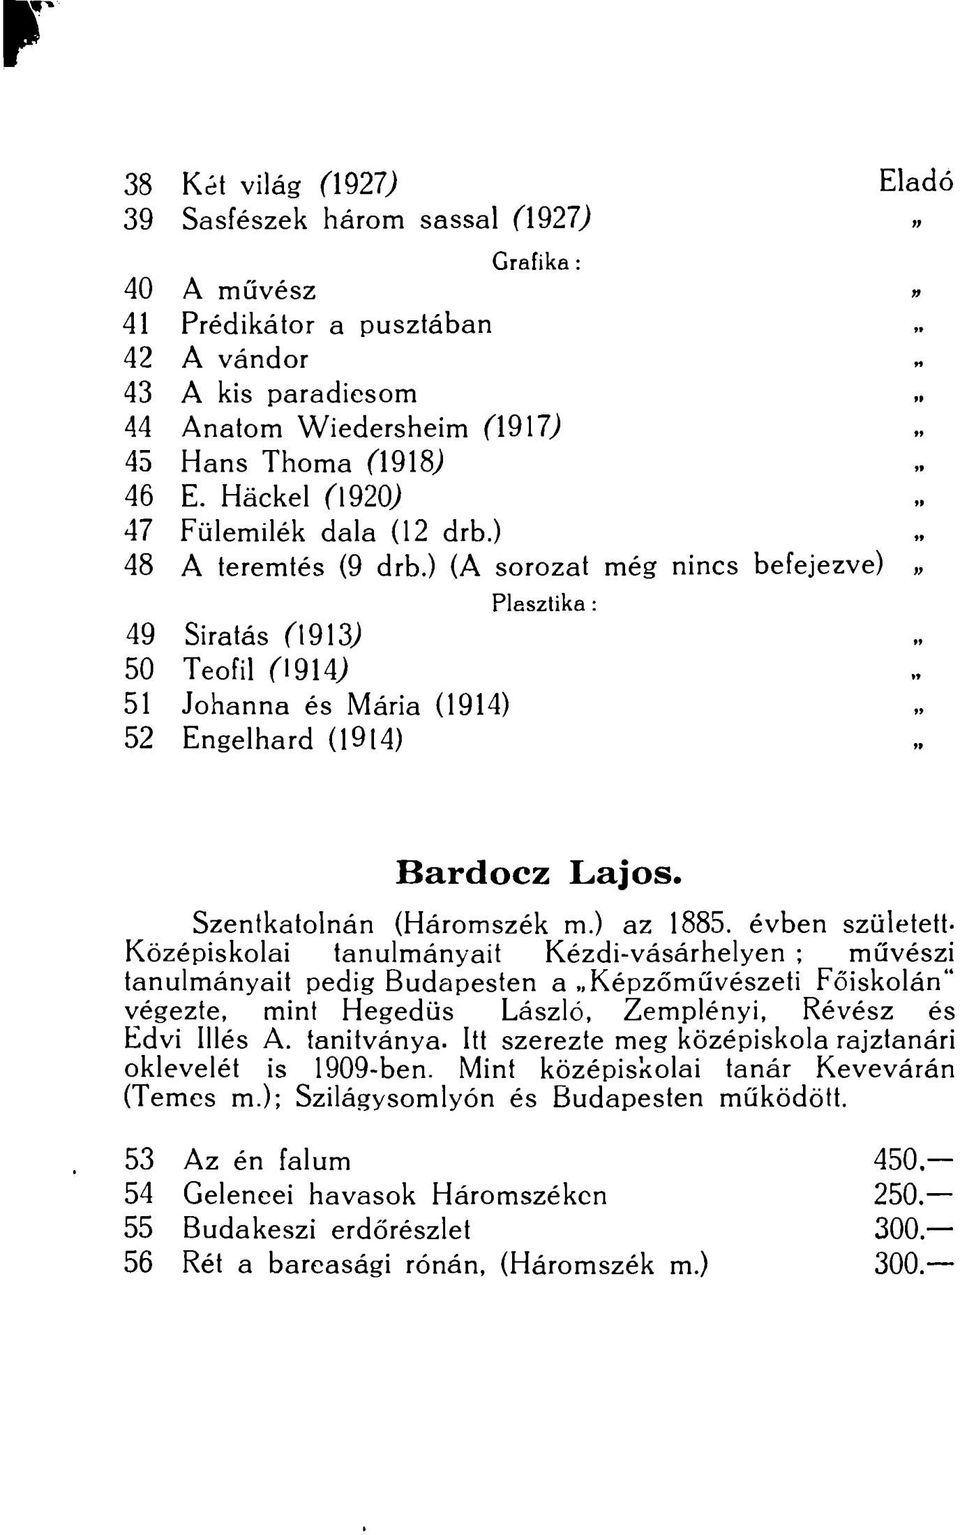 ) (A sorozat még nincs befejezve)» 49 Siratás (\9\3) 50 Teofil (19W 51 Johanna és Mária (1914) 52 Engelhard (1914) Plasztika : Bardocz Lajos. Szentkatolnán (Háromszék m.) az 1885.